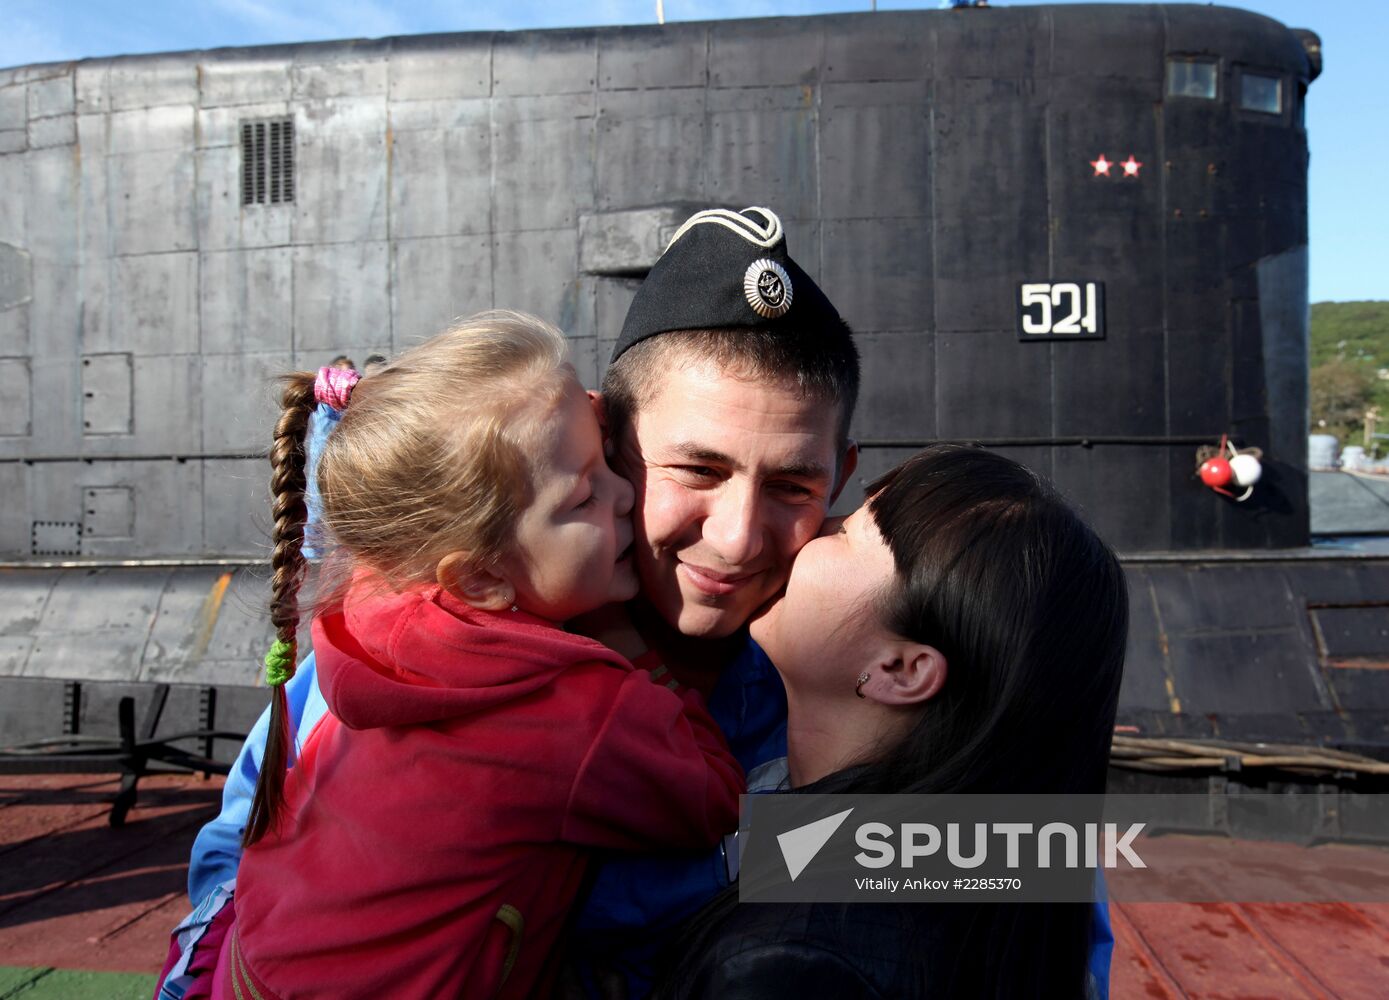 Krasnokamensk submarine welcomed back